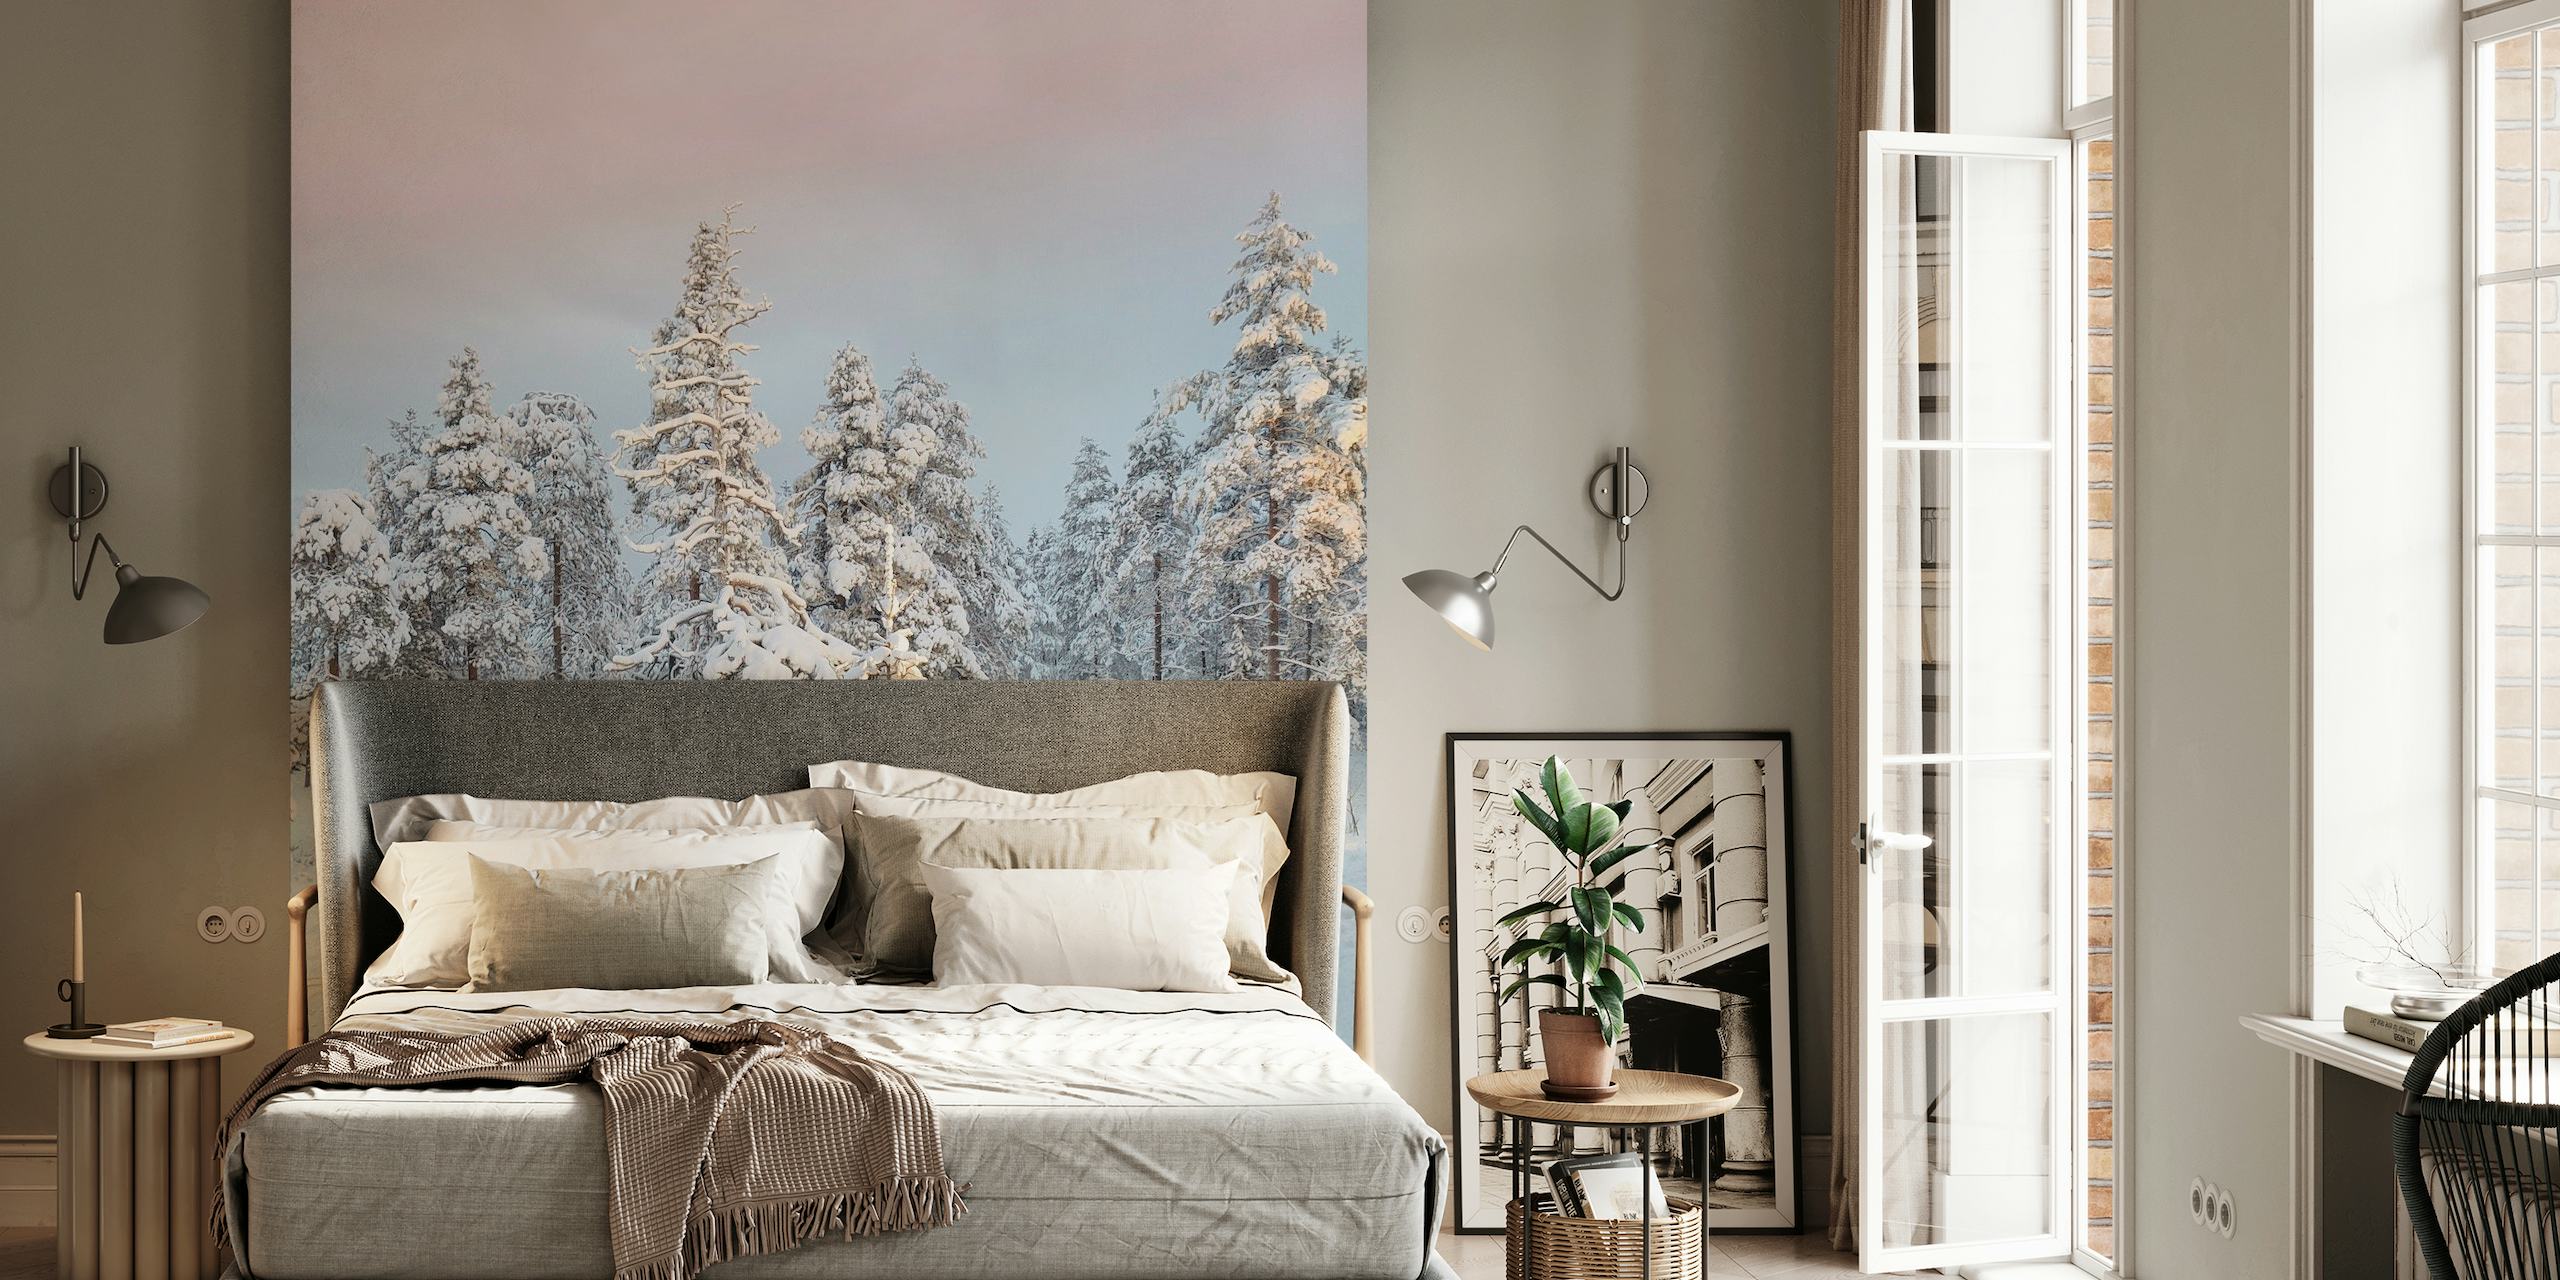 Snedækket bjerglandskab med frostede træer mod et roligt vægmaleri